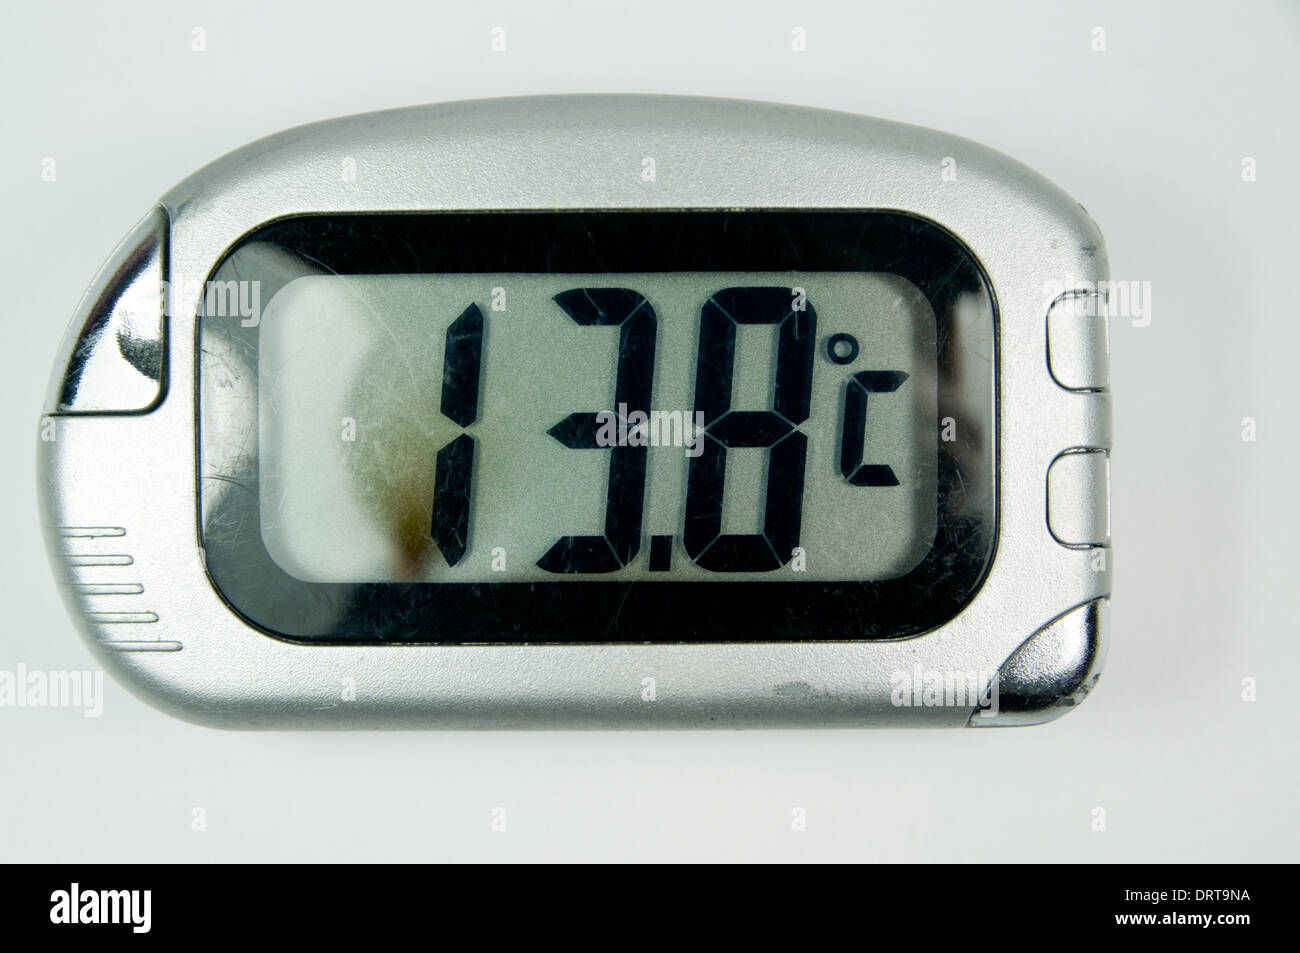 Thermomètre numérique montrant 13,8 degrés C. Banque D'Images